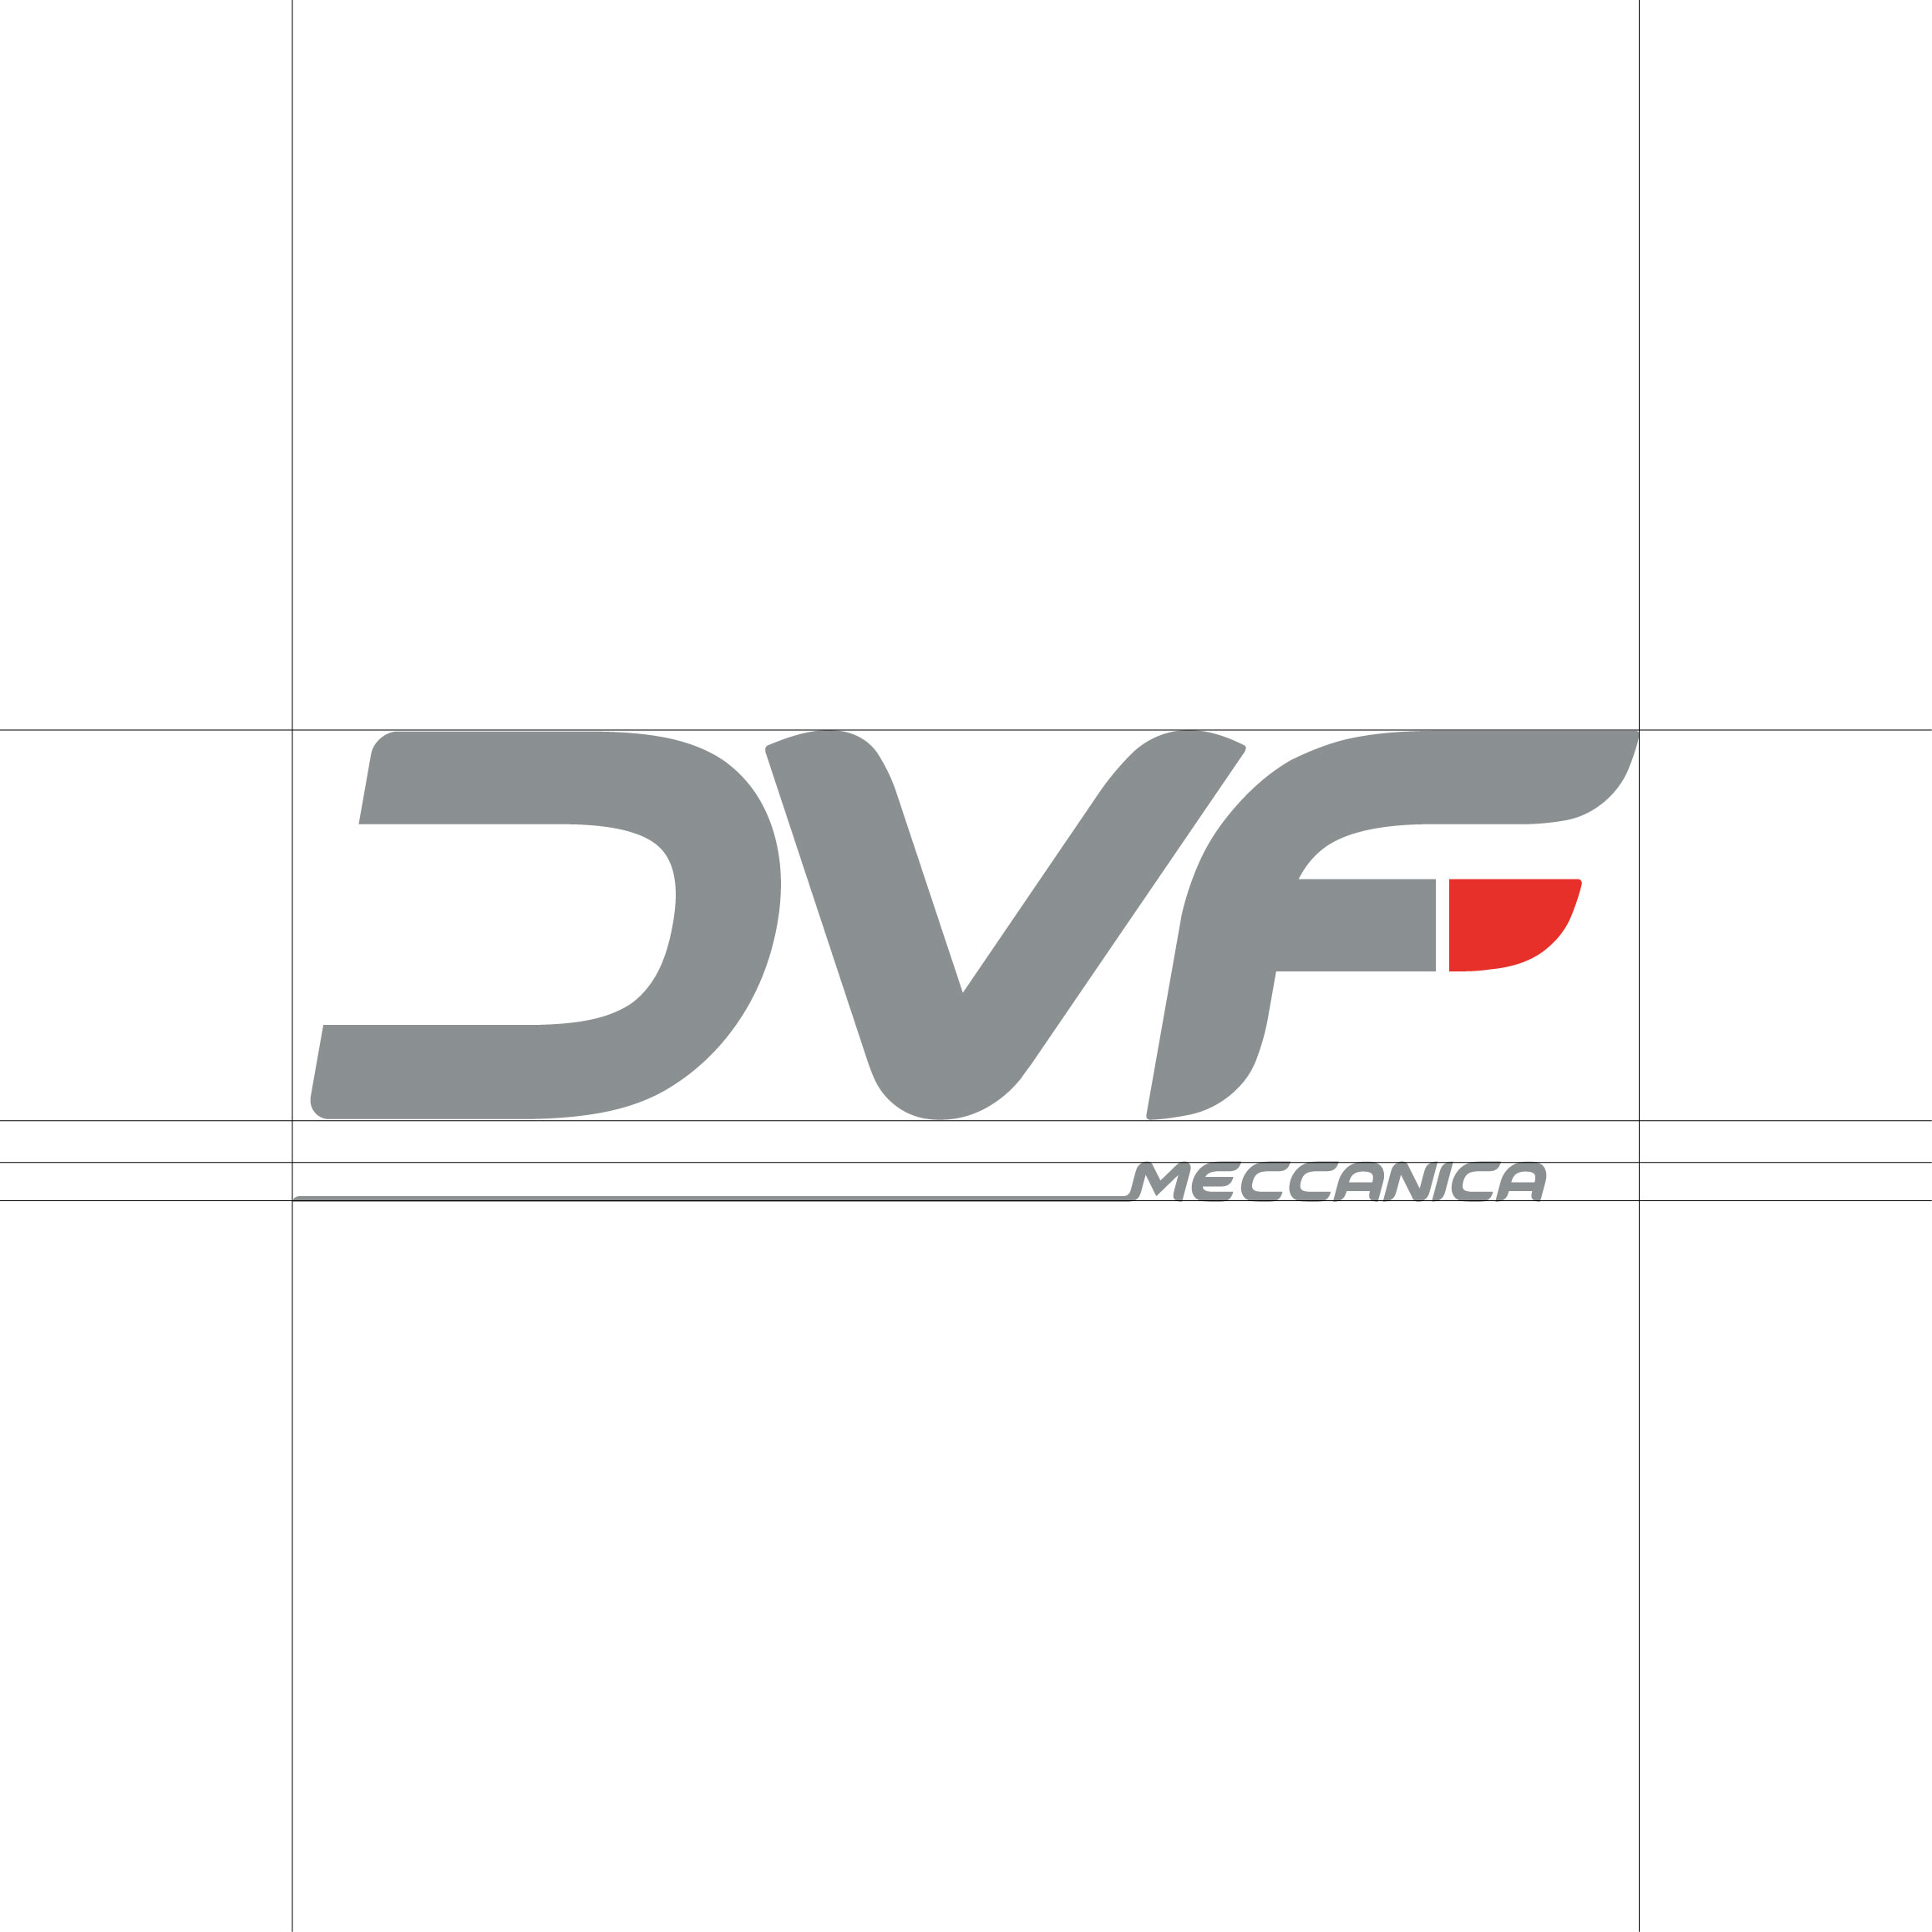 nuovo logo dvf meccanica